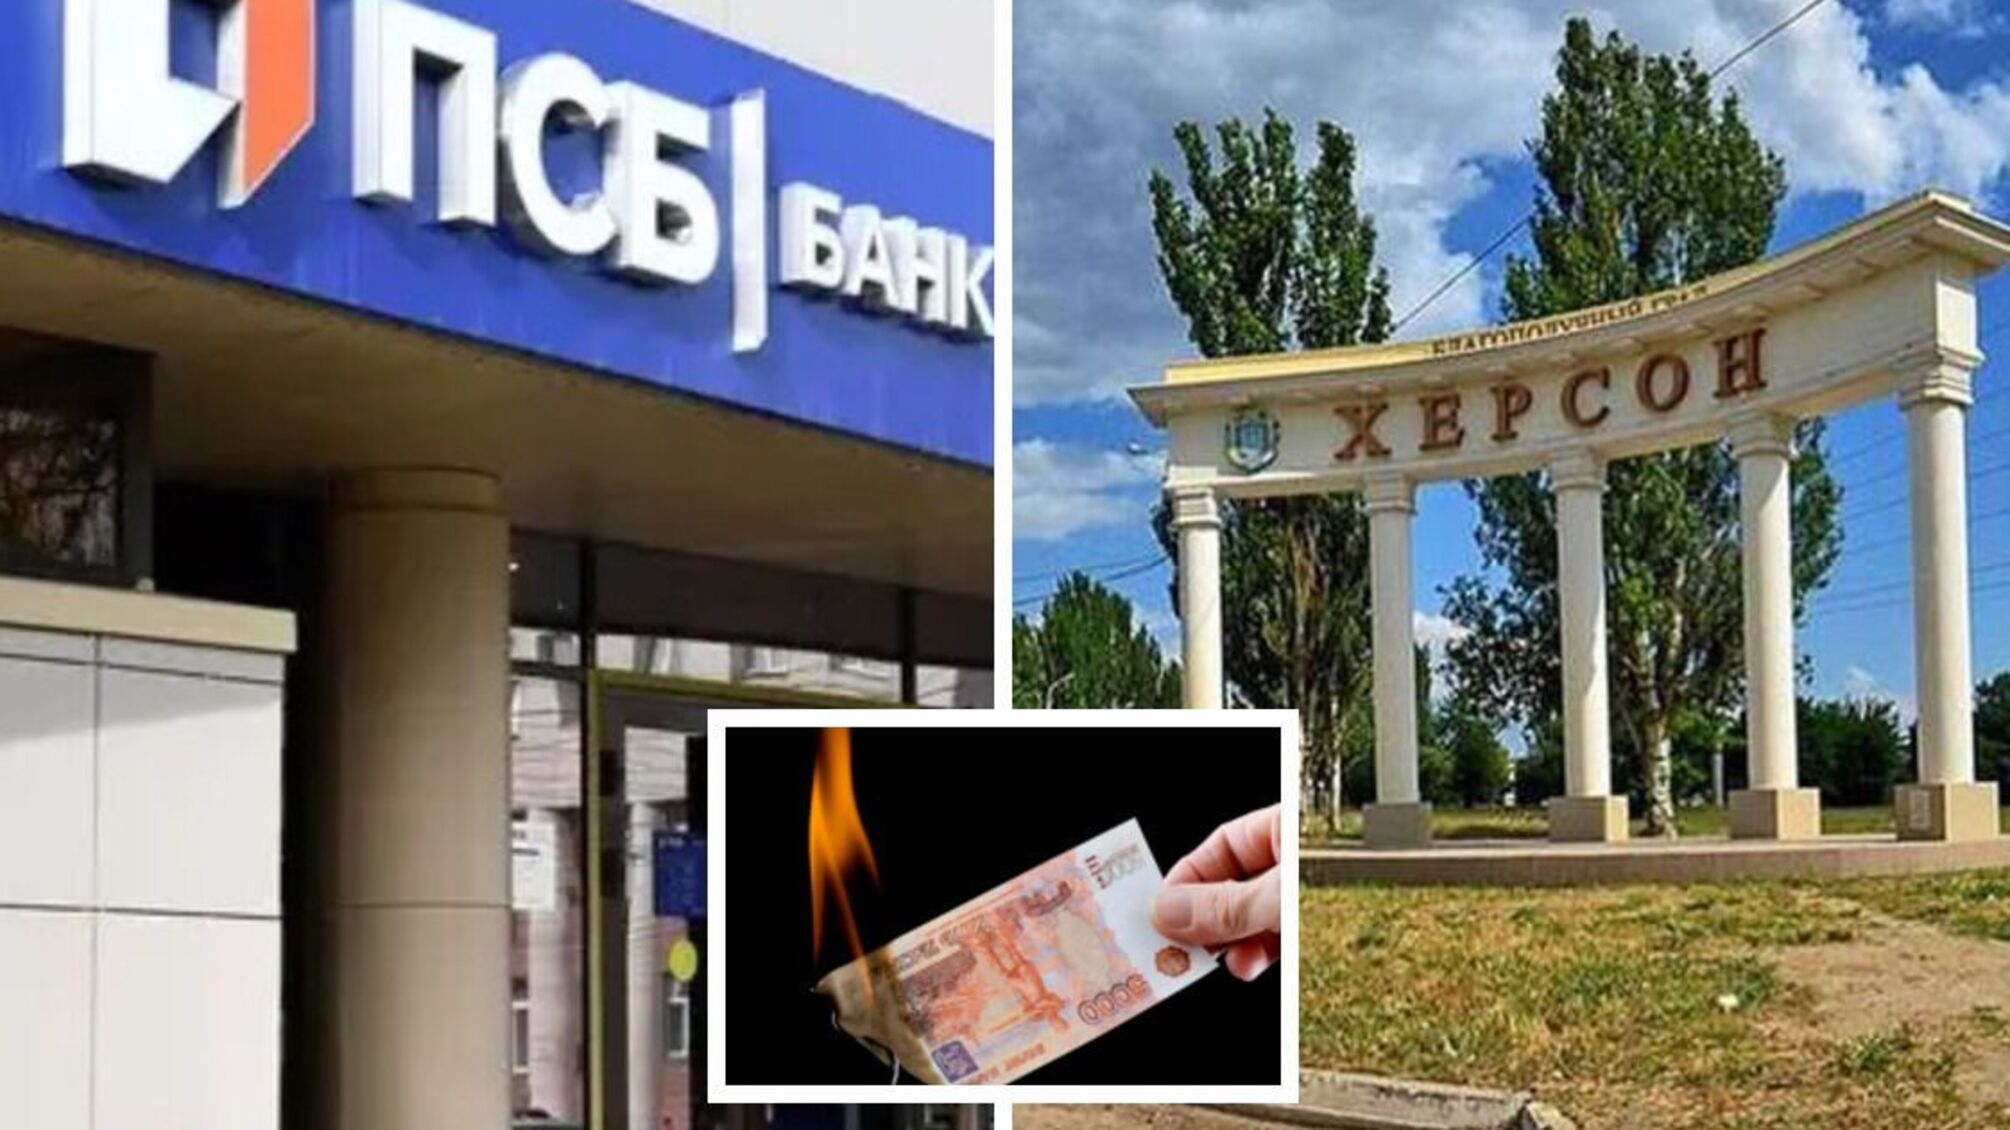 Экономист: идея с открытием в Херсоне российского банка провальная